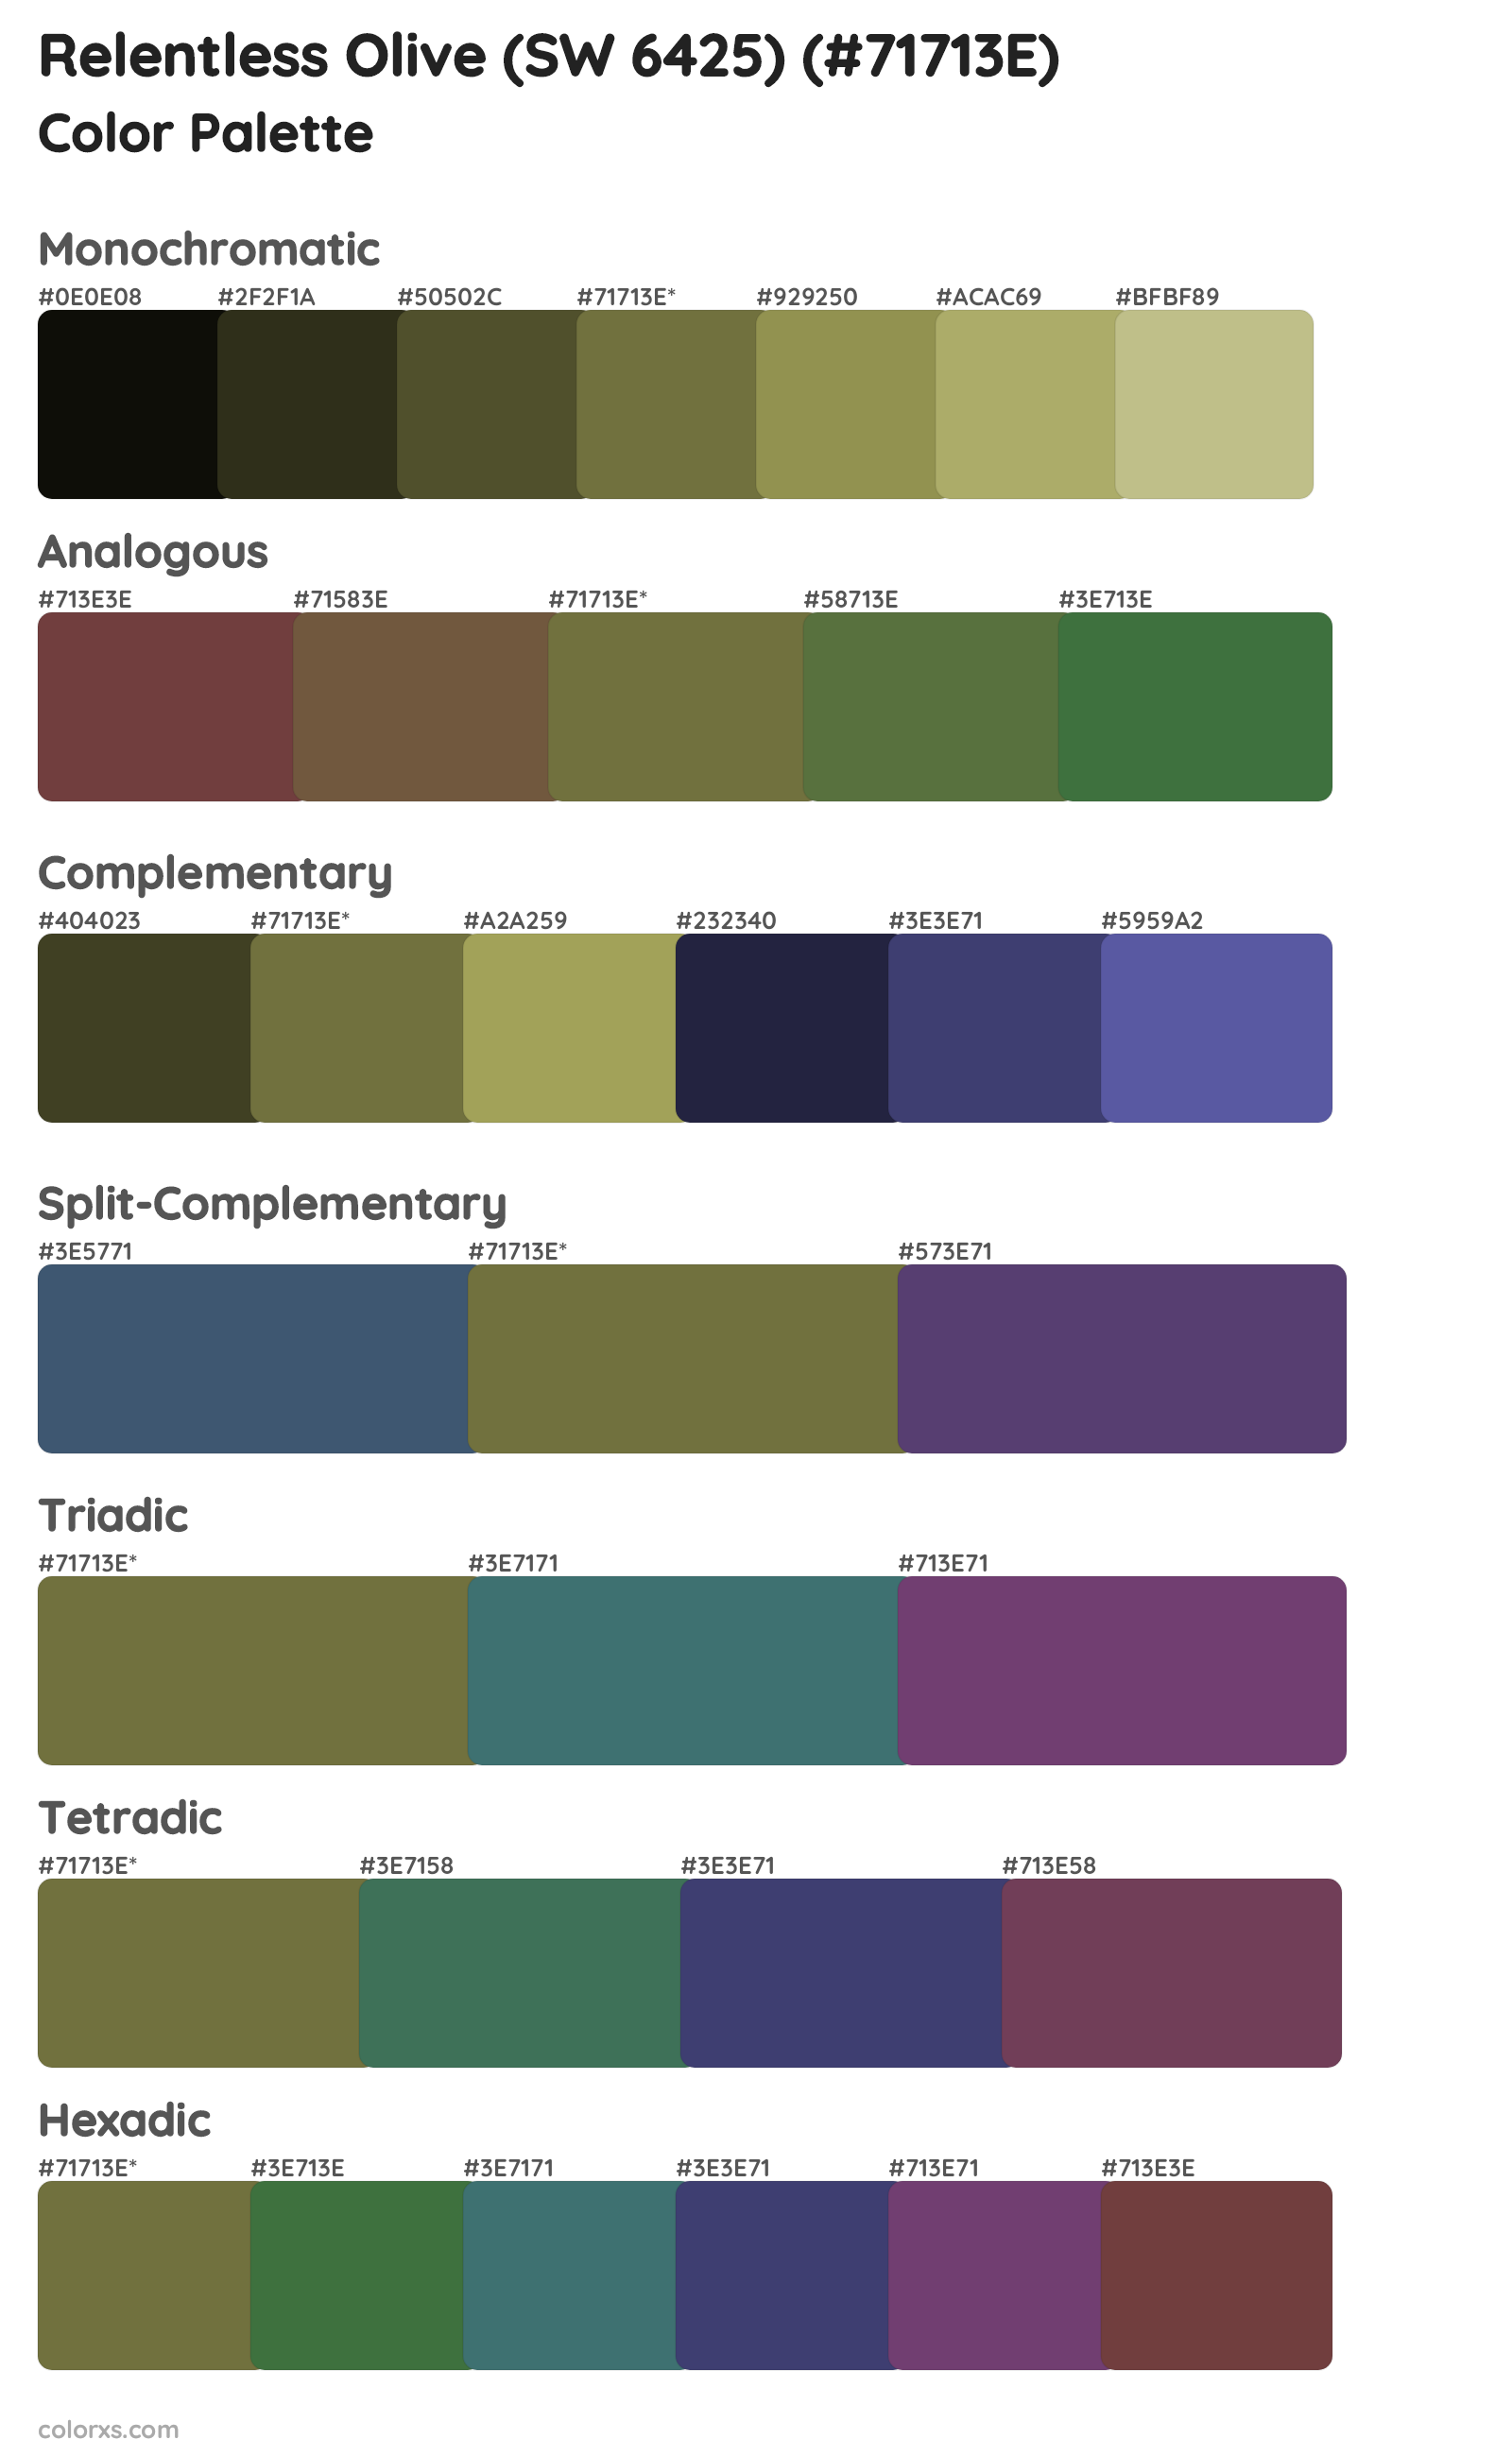 Relentless Olive (SW 6425) Color Scheme Palettes